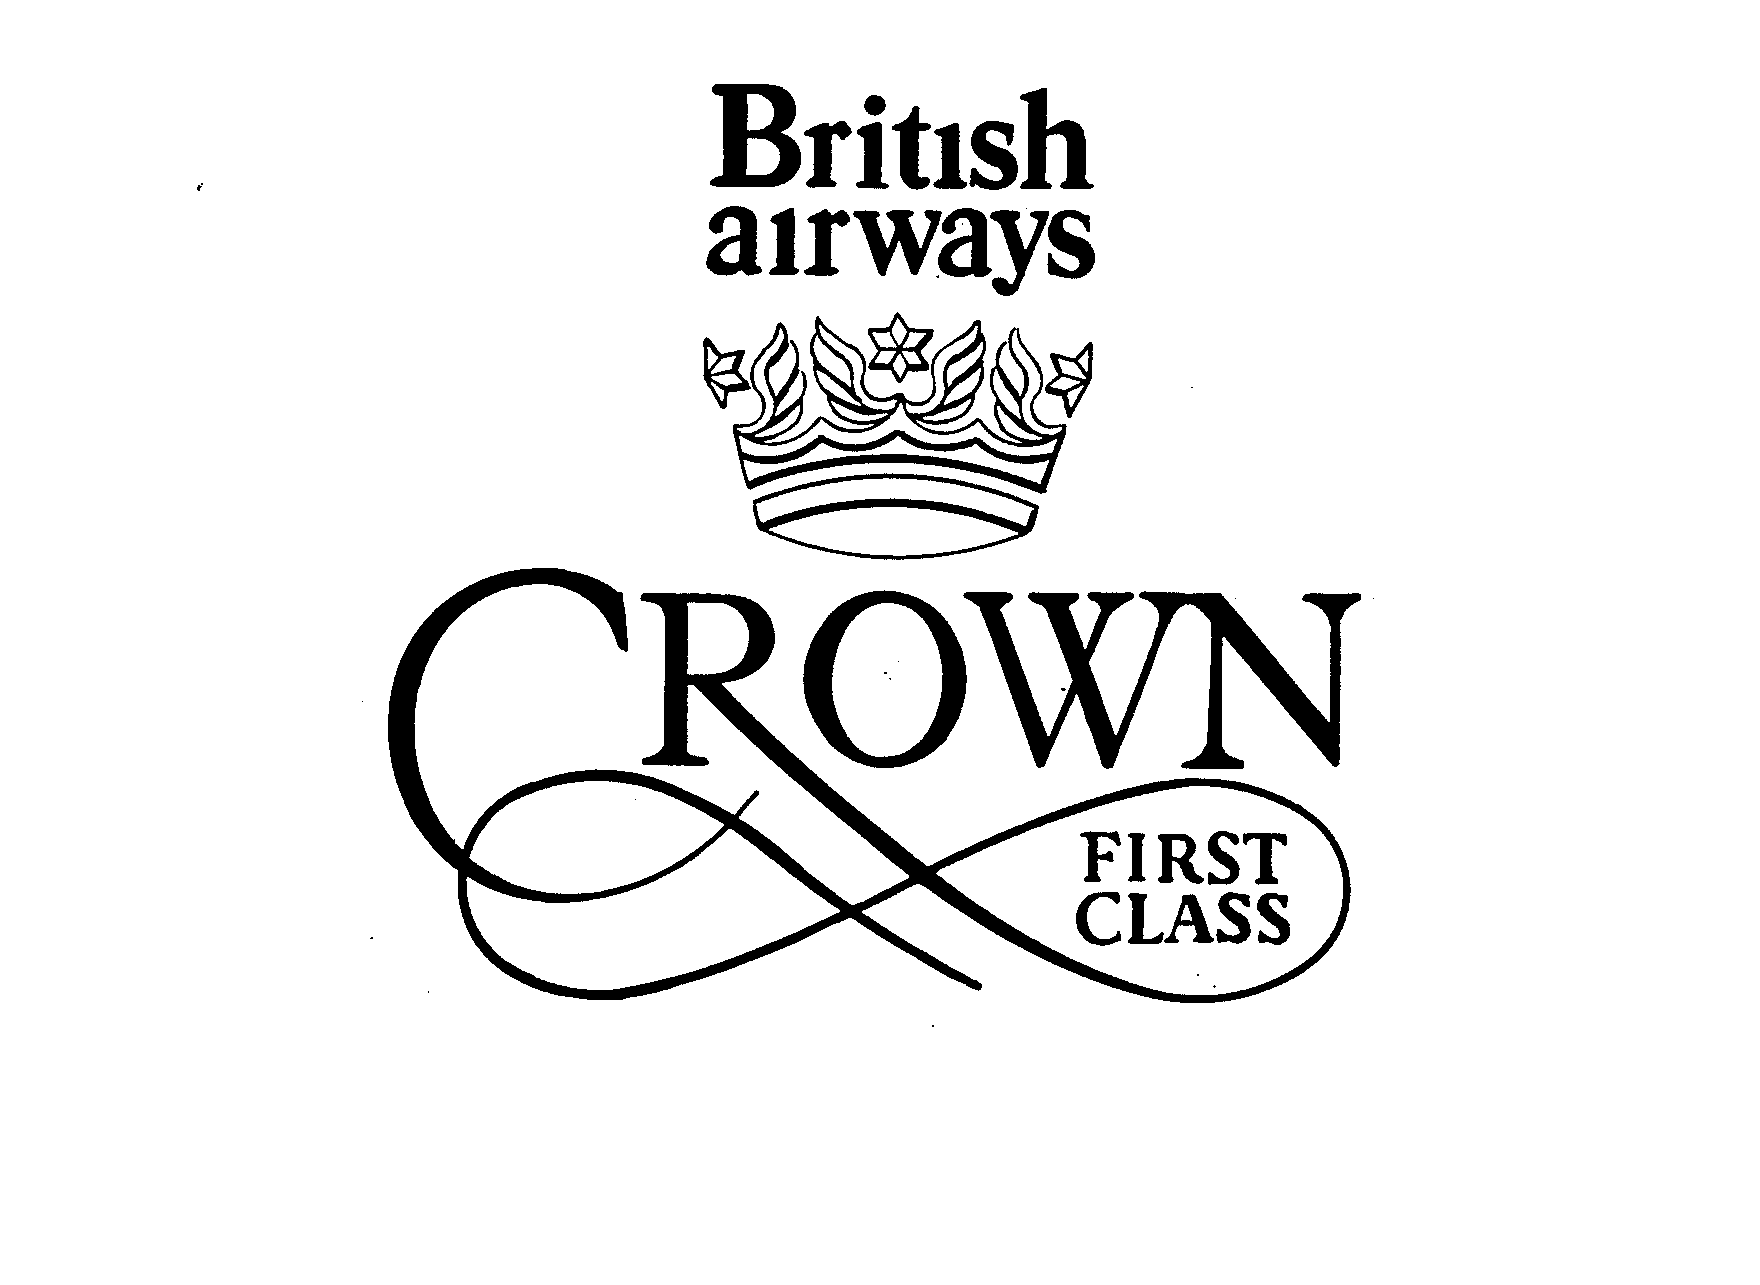  BRITISH AIRWAYS CROWN FIRST CLASS